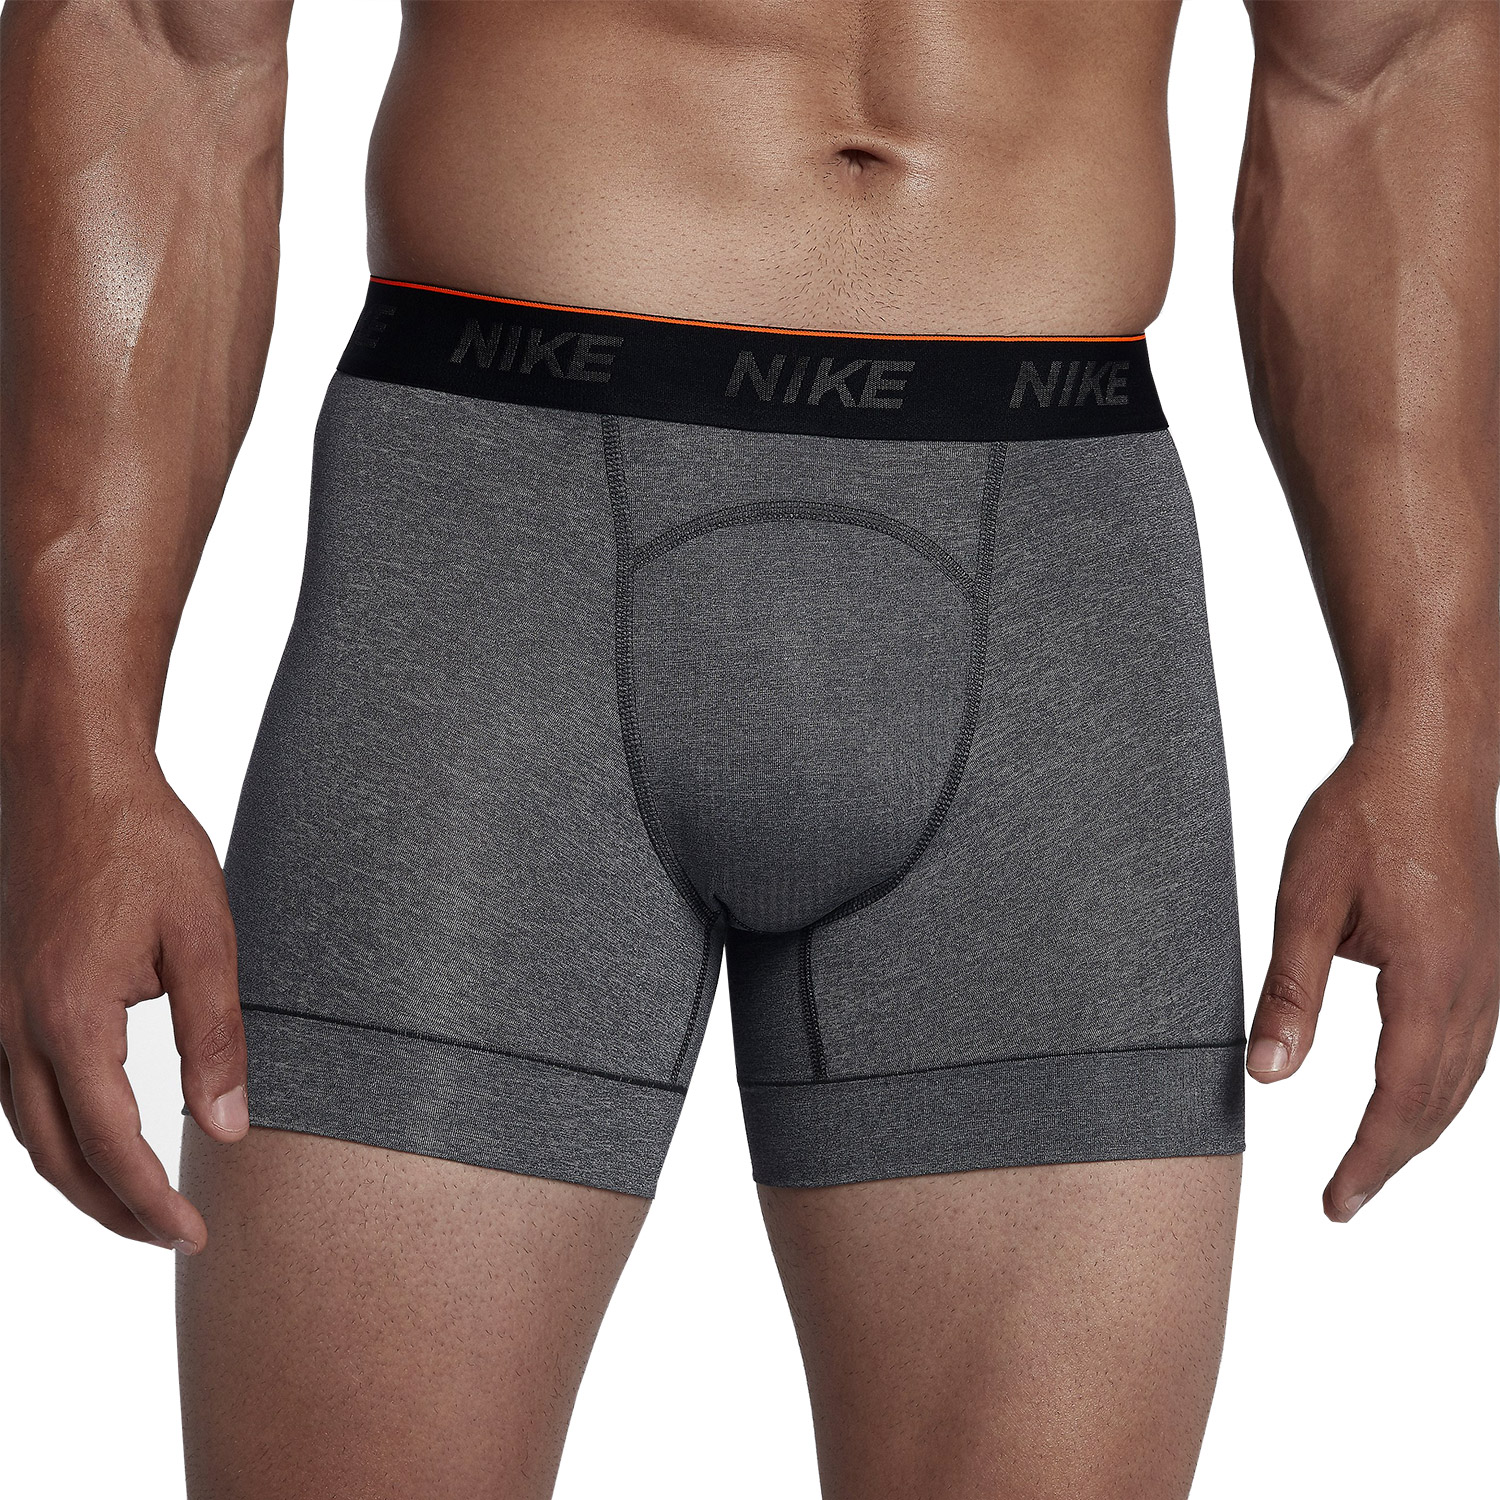 Nike Brief Men's Underwear Boxer - Grey MisterRunning.com